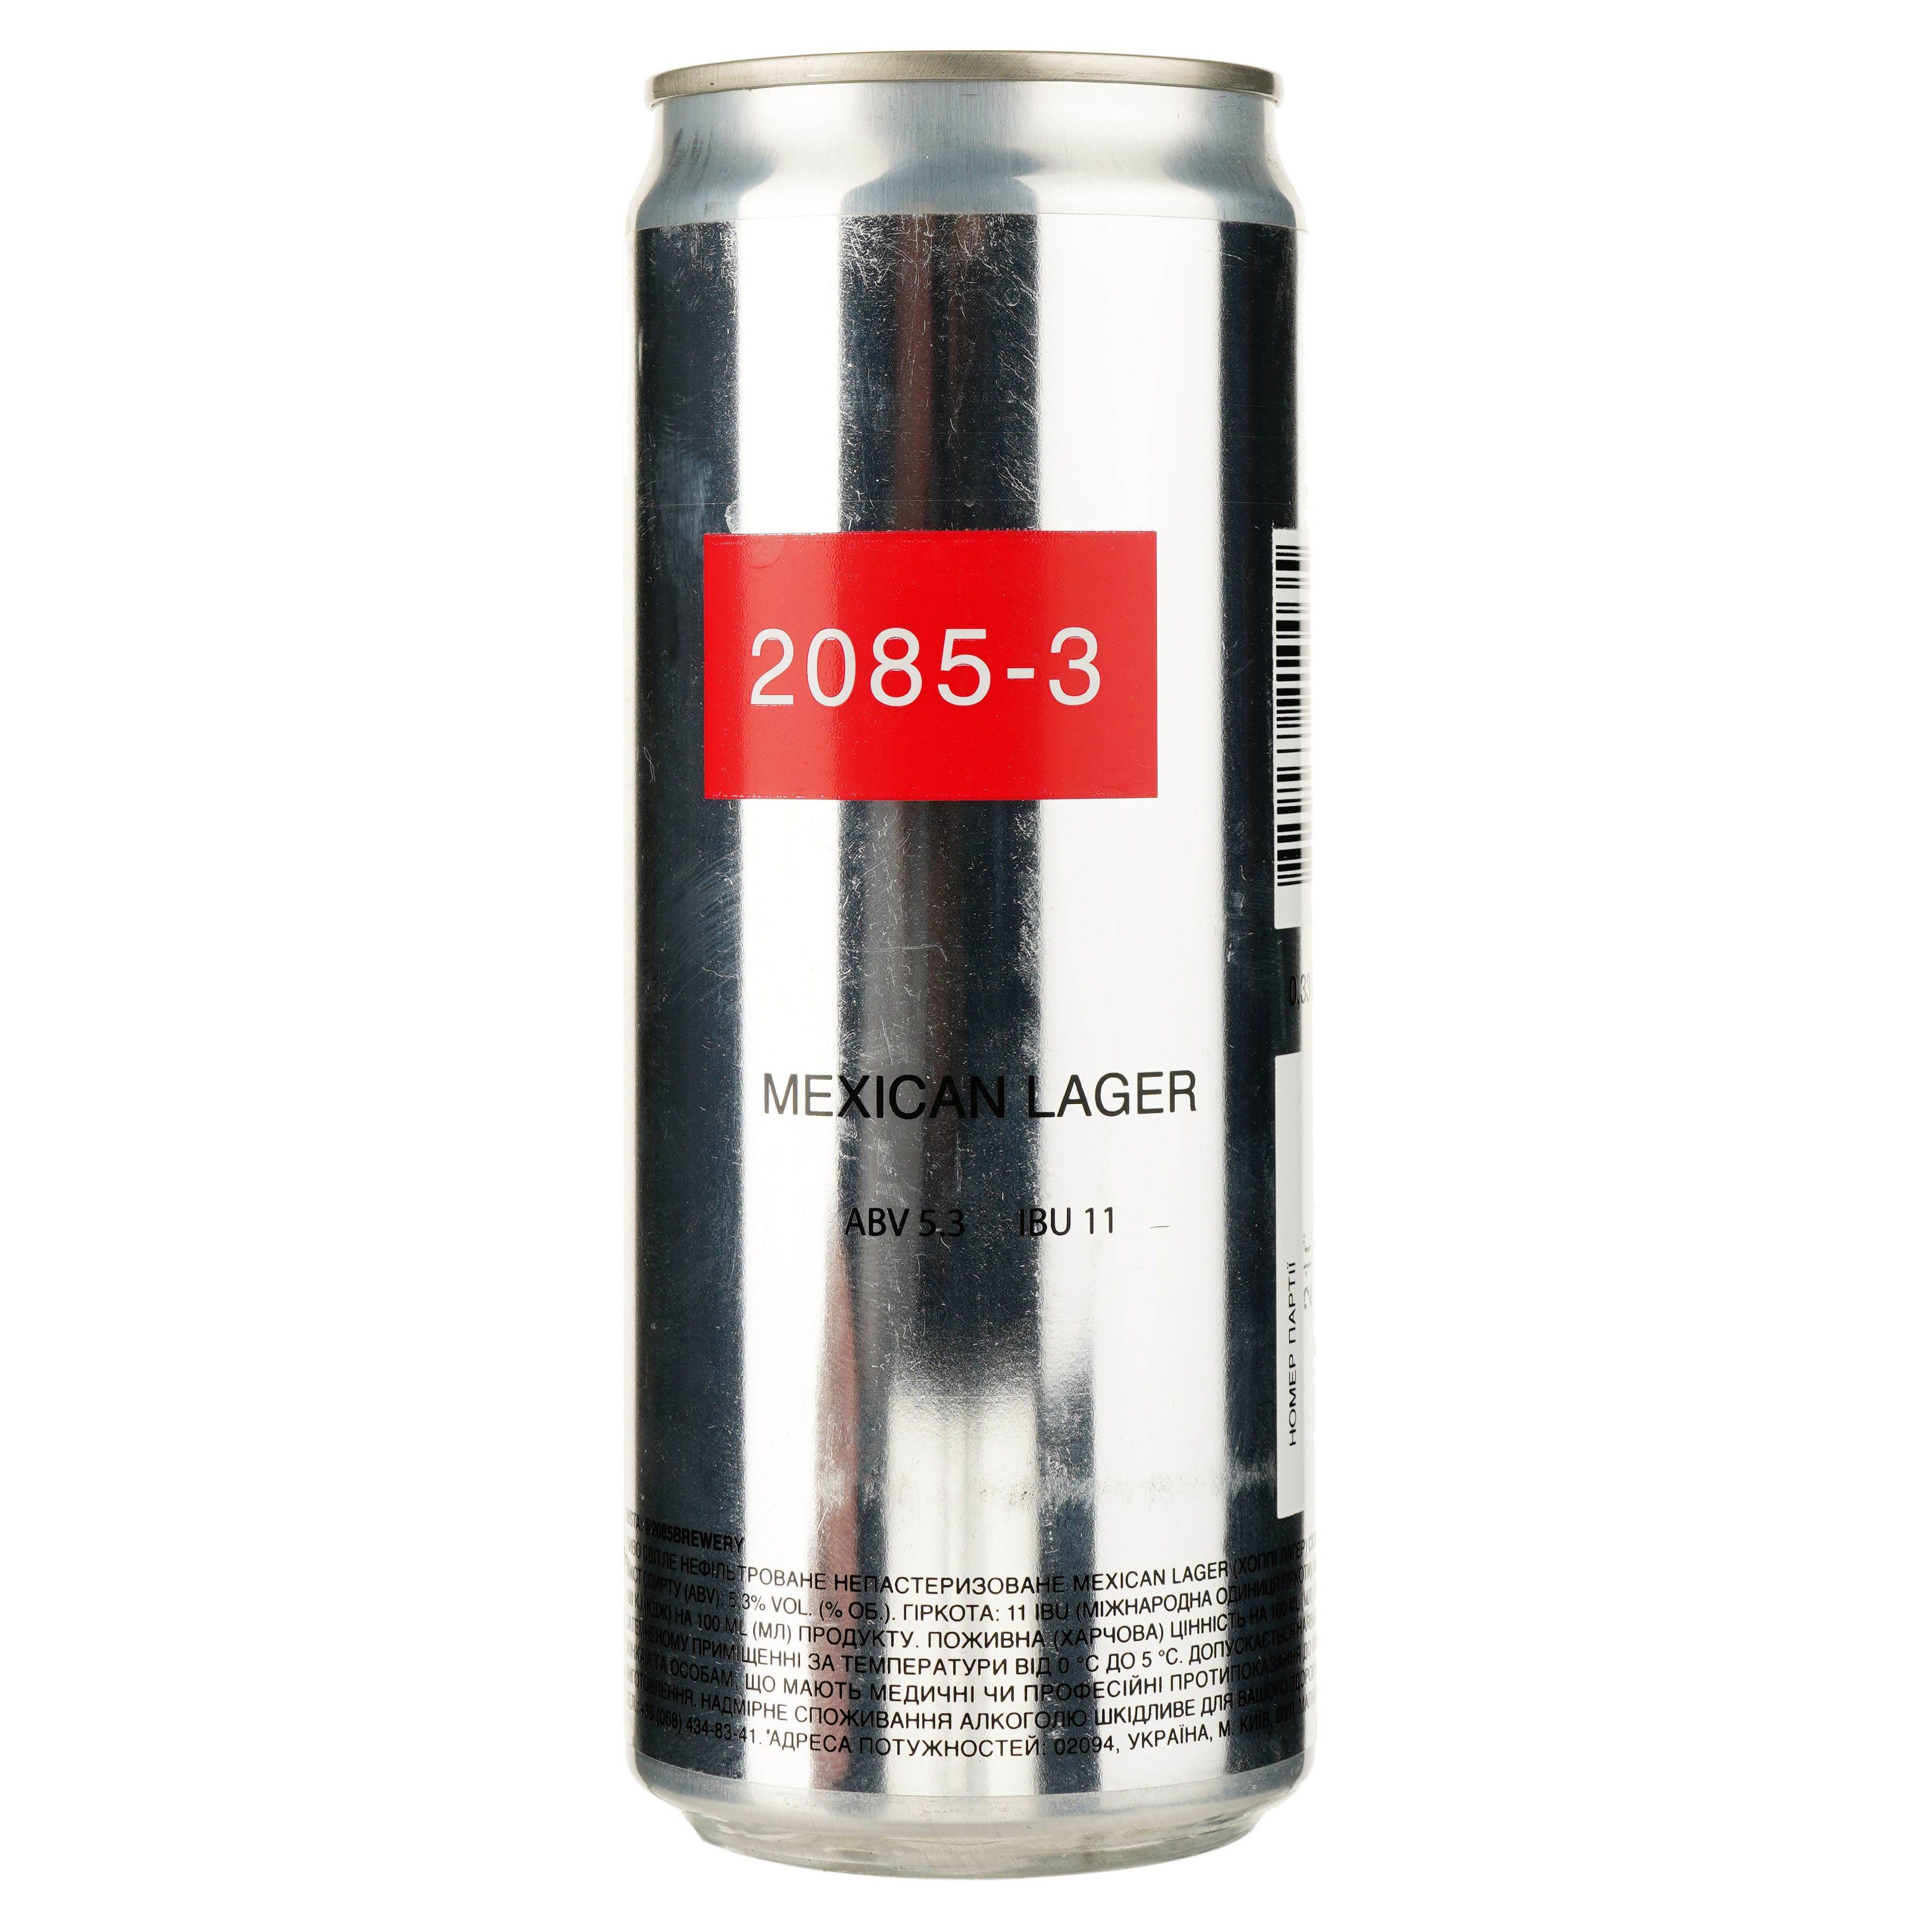 Пиво 2085-3 Hoppy Mexican Lager, світле, нефільтроване, 5,3%, з/б, 0,33 л (842345) - фото 1